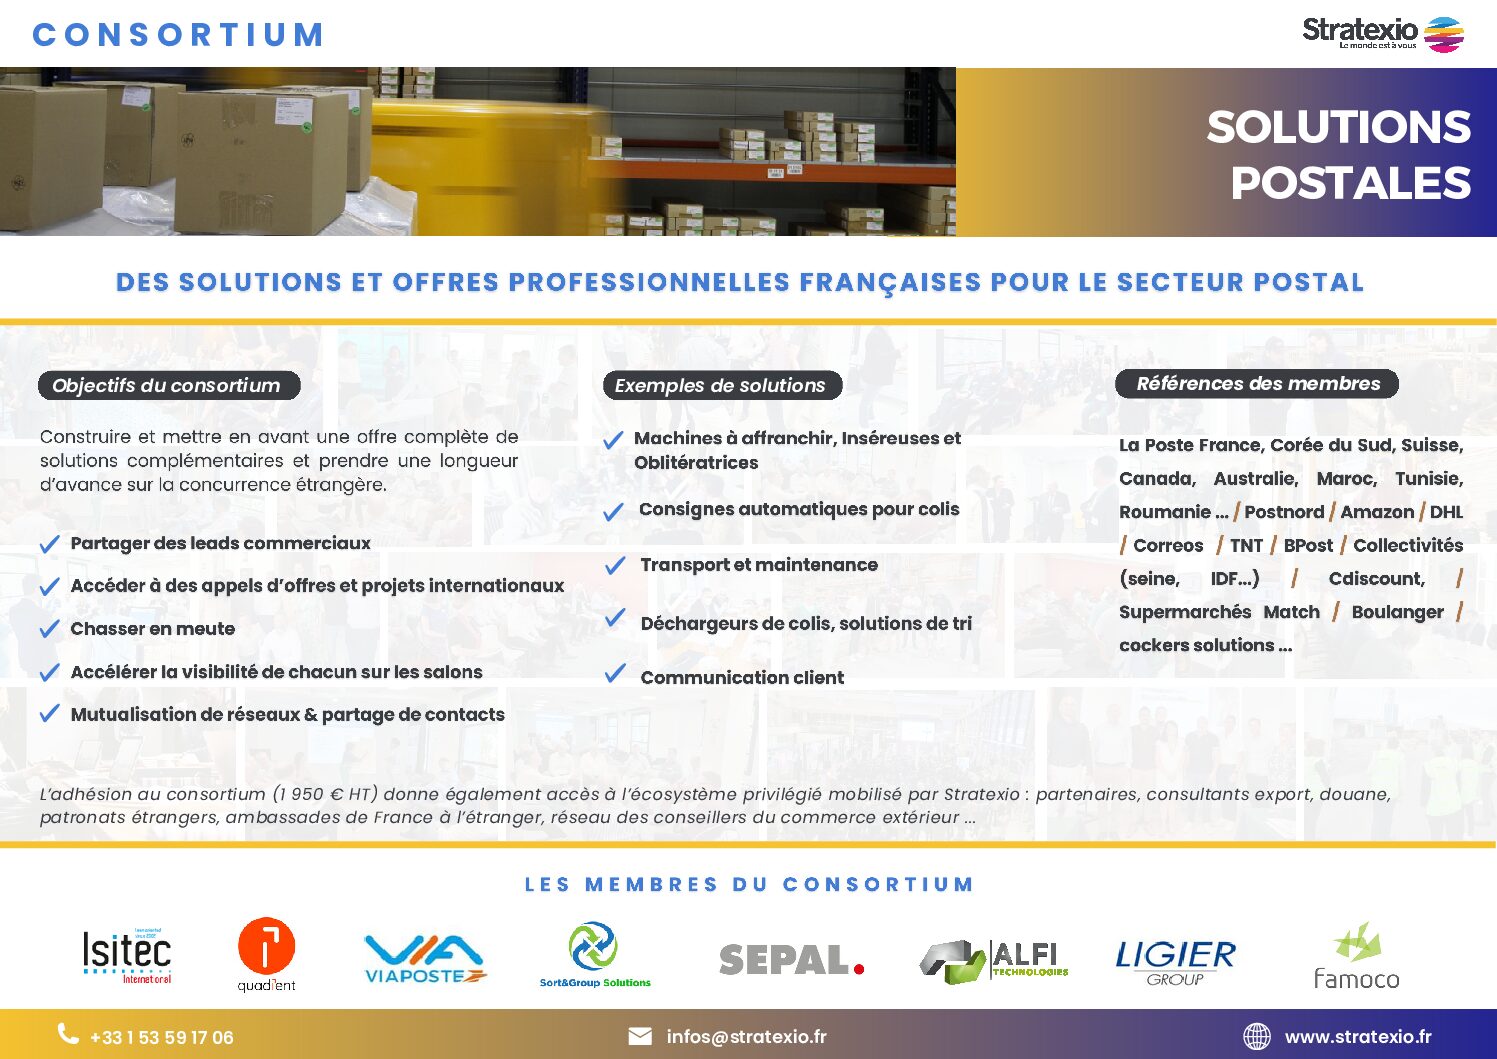 Flyer de présentation du consortium des solutions postales français à destination des marchés à l'international